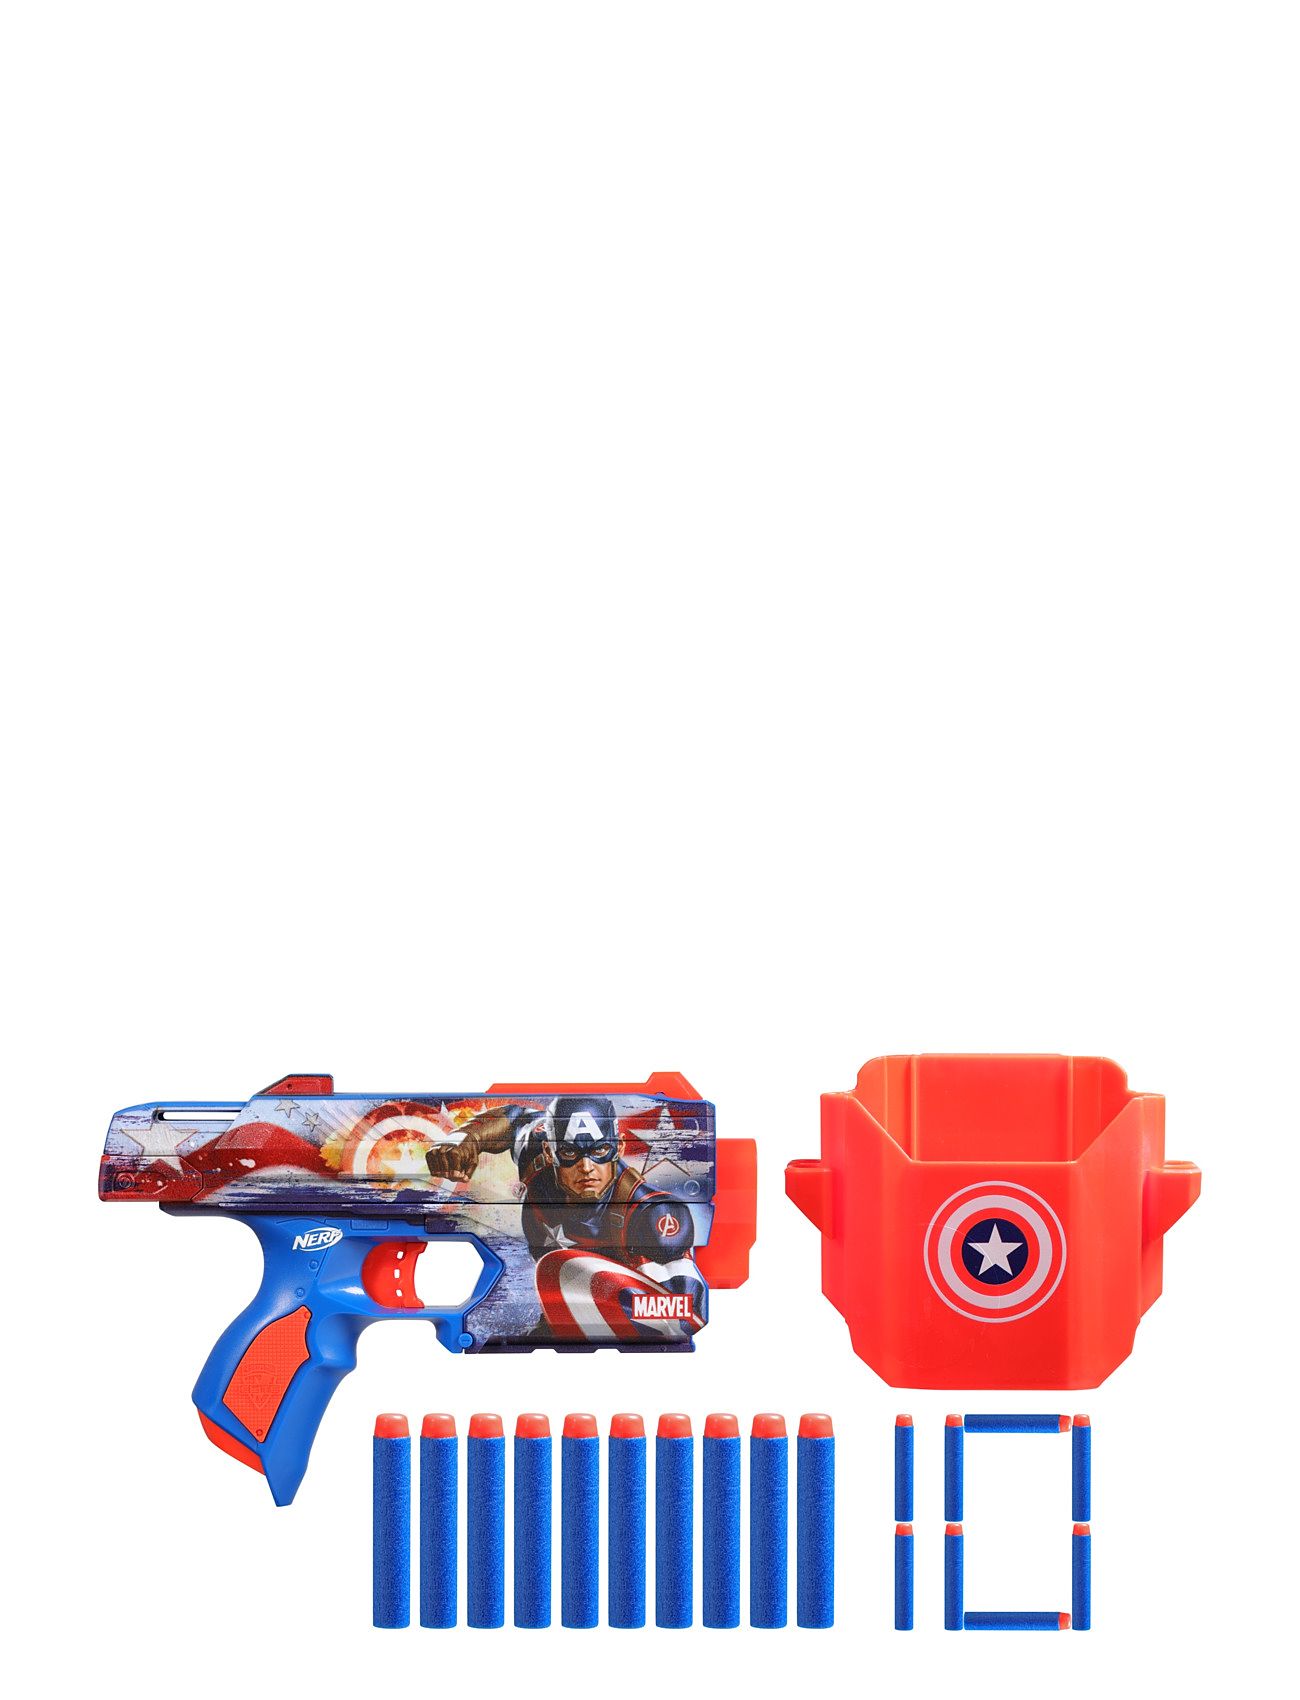 Nerf Marvel Captain America Blaster Toys Toy Guns Multi/patterned Nerf